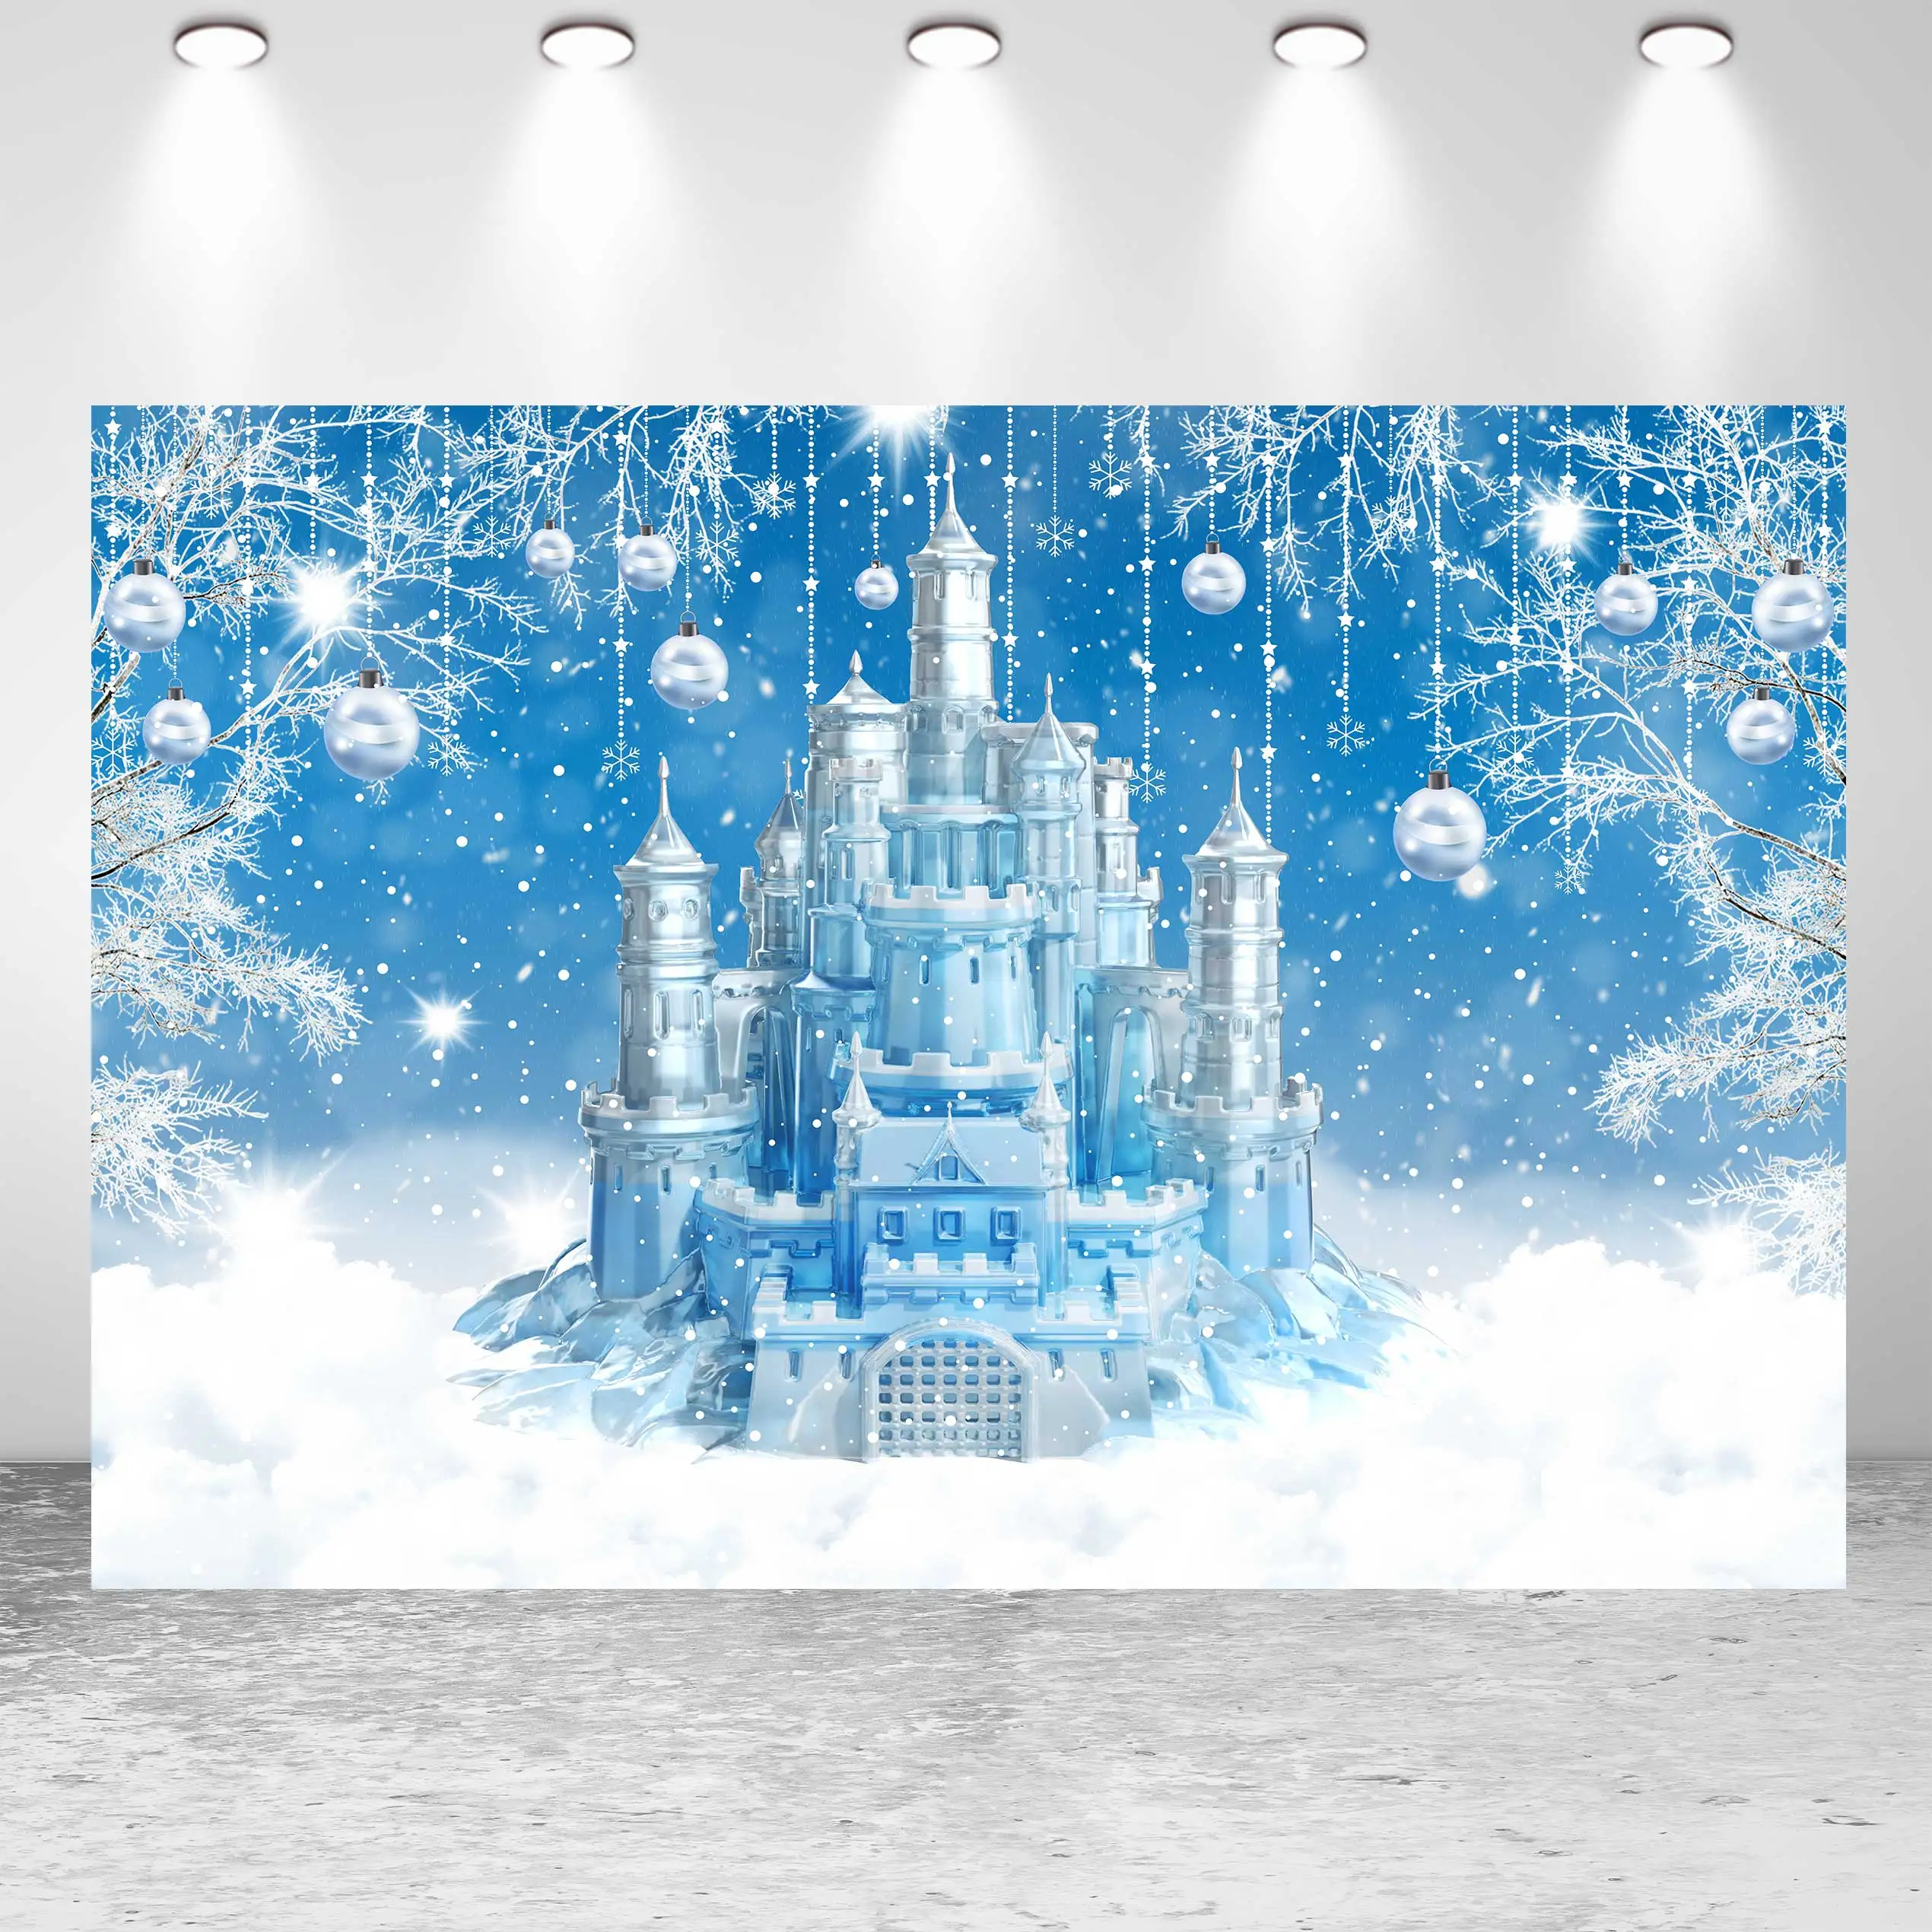 

Фотофон Seekpro для студийной фотосъемки с изображением зимы Рождества праздника принцессы замерзшего замка снега семейного детского дня рождения